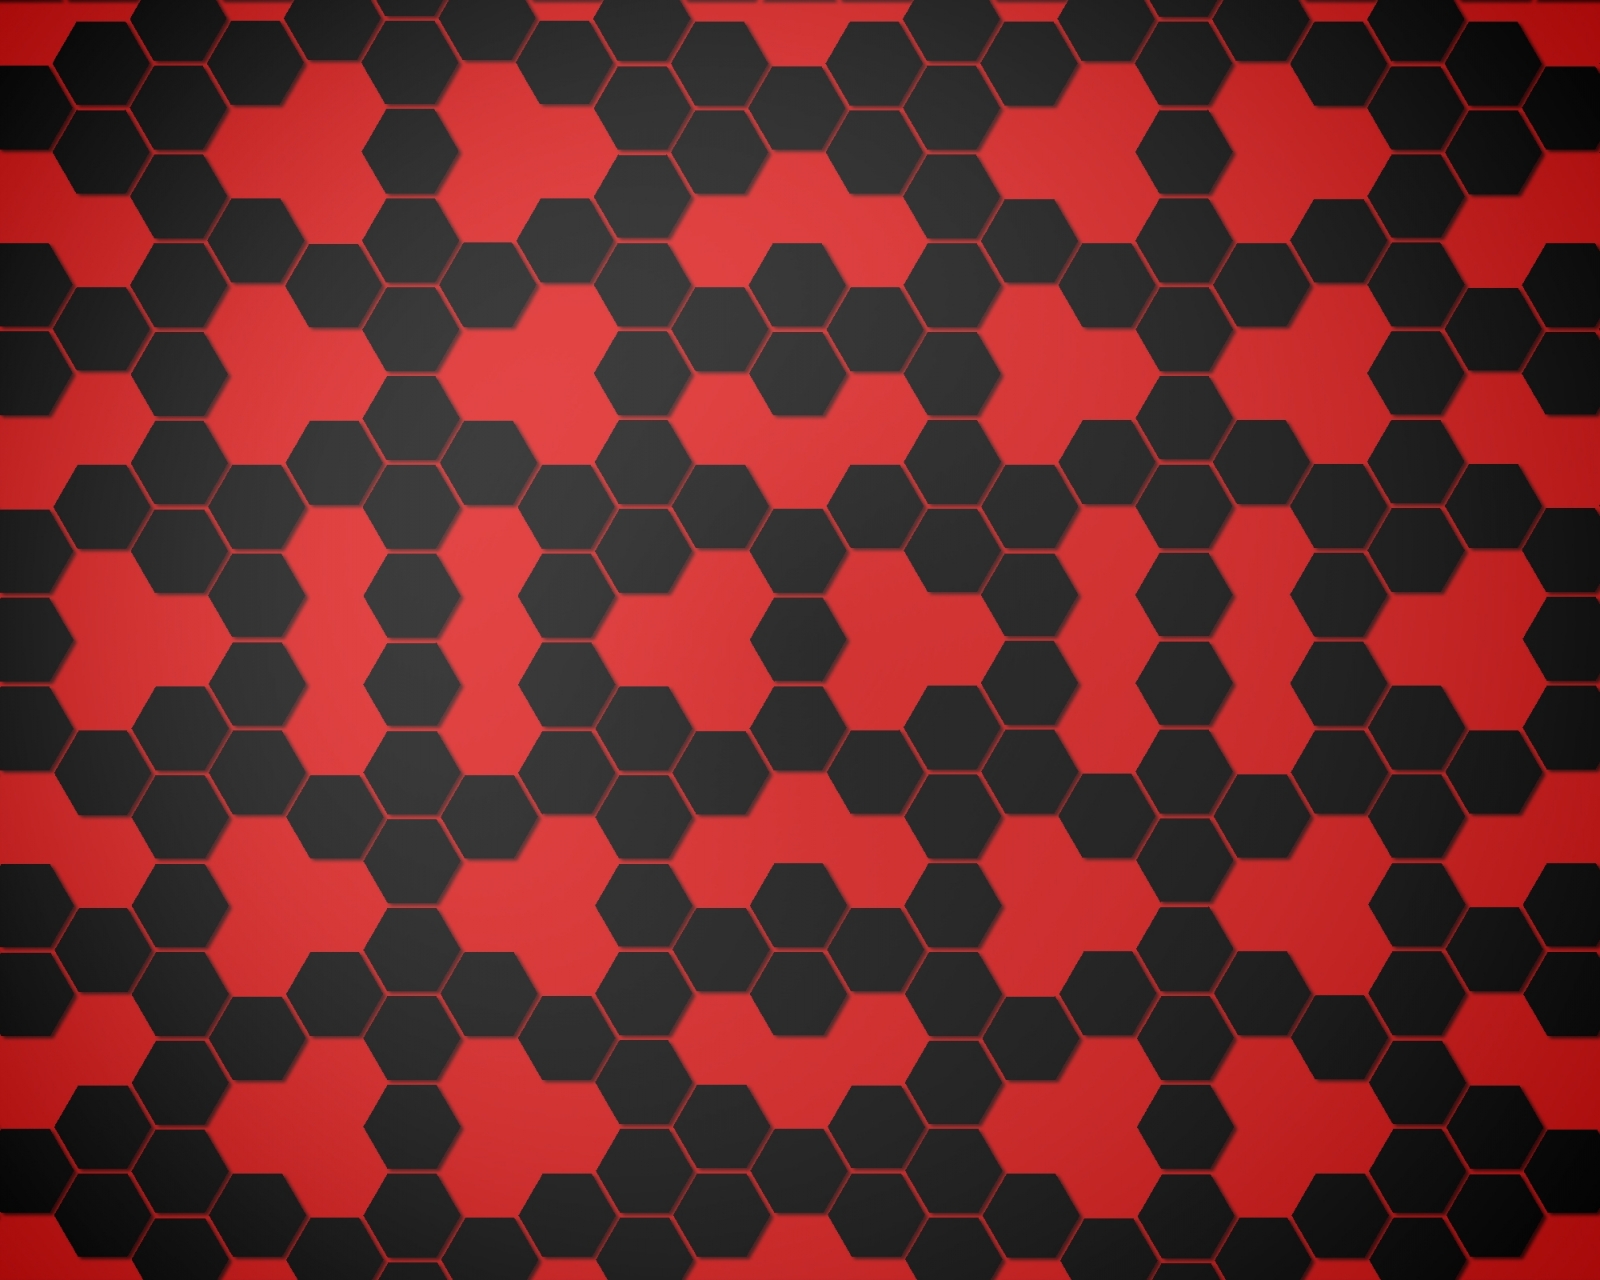 Скачать обои бесплатно Красный, Черный, Чёрный, Шестиугольник, Абстрактные, Шаблон картинка на рабочий стол ПК